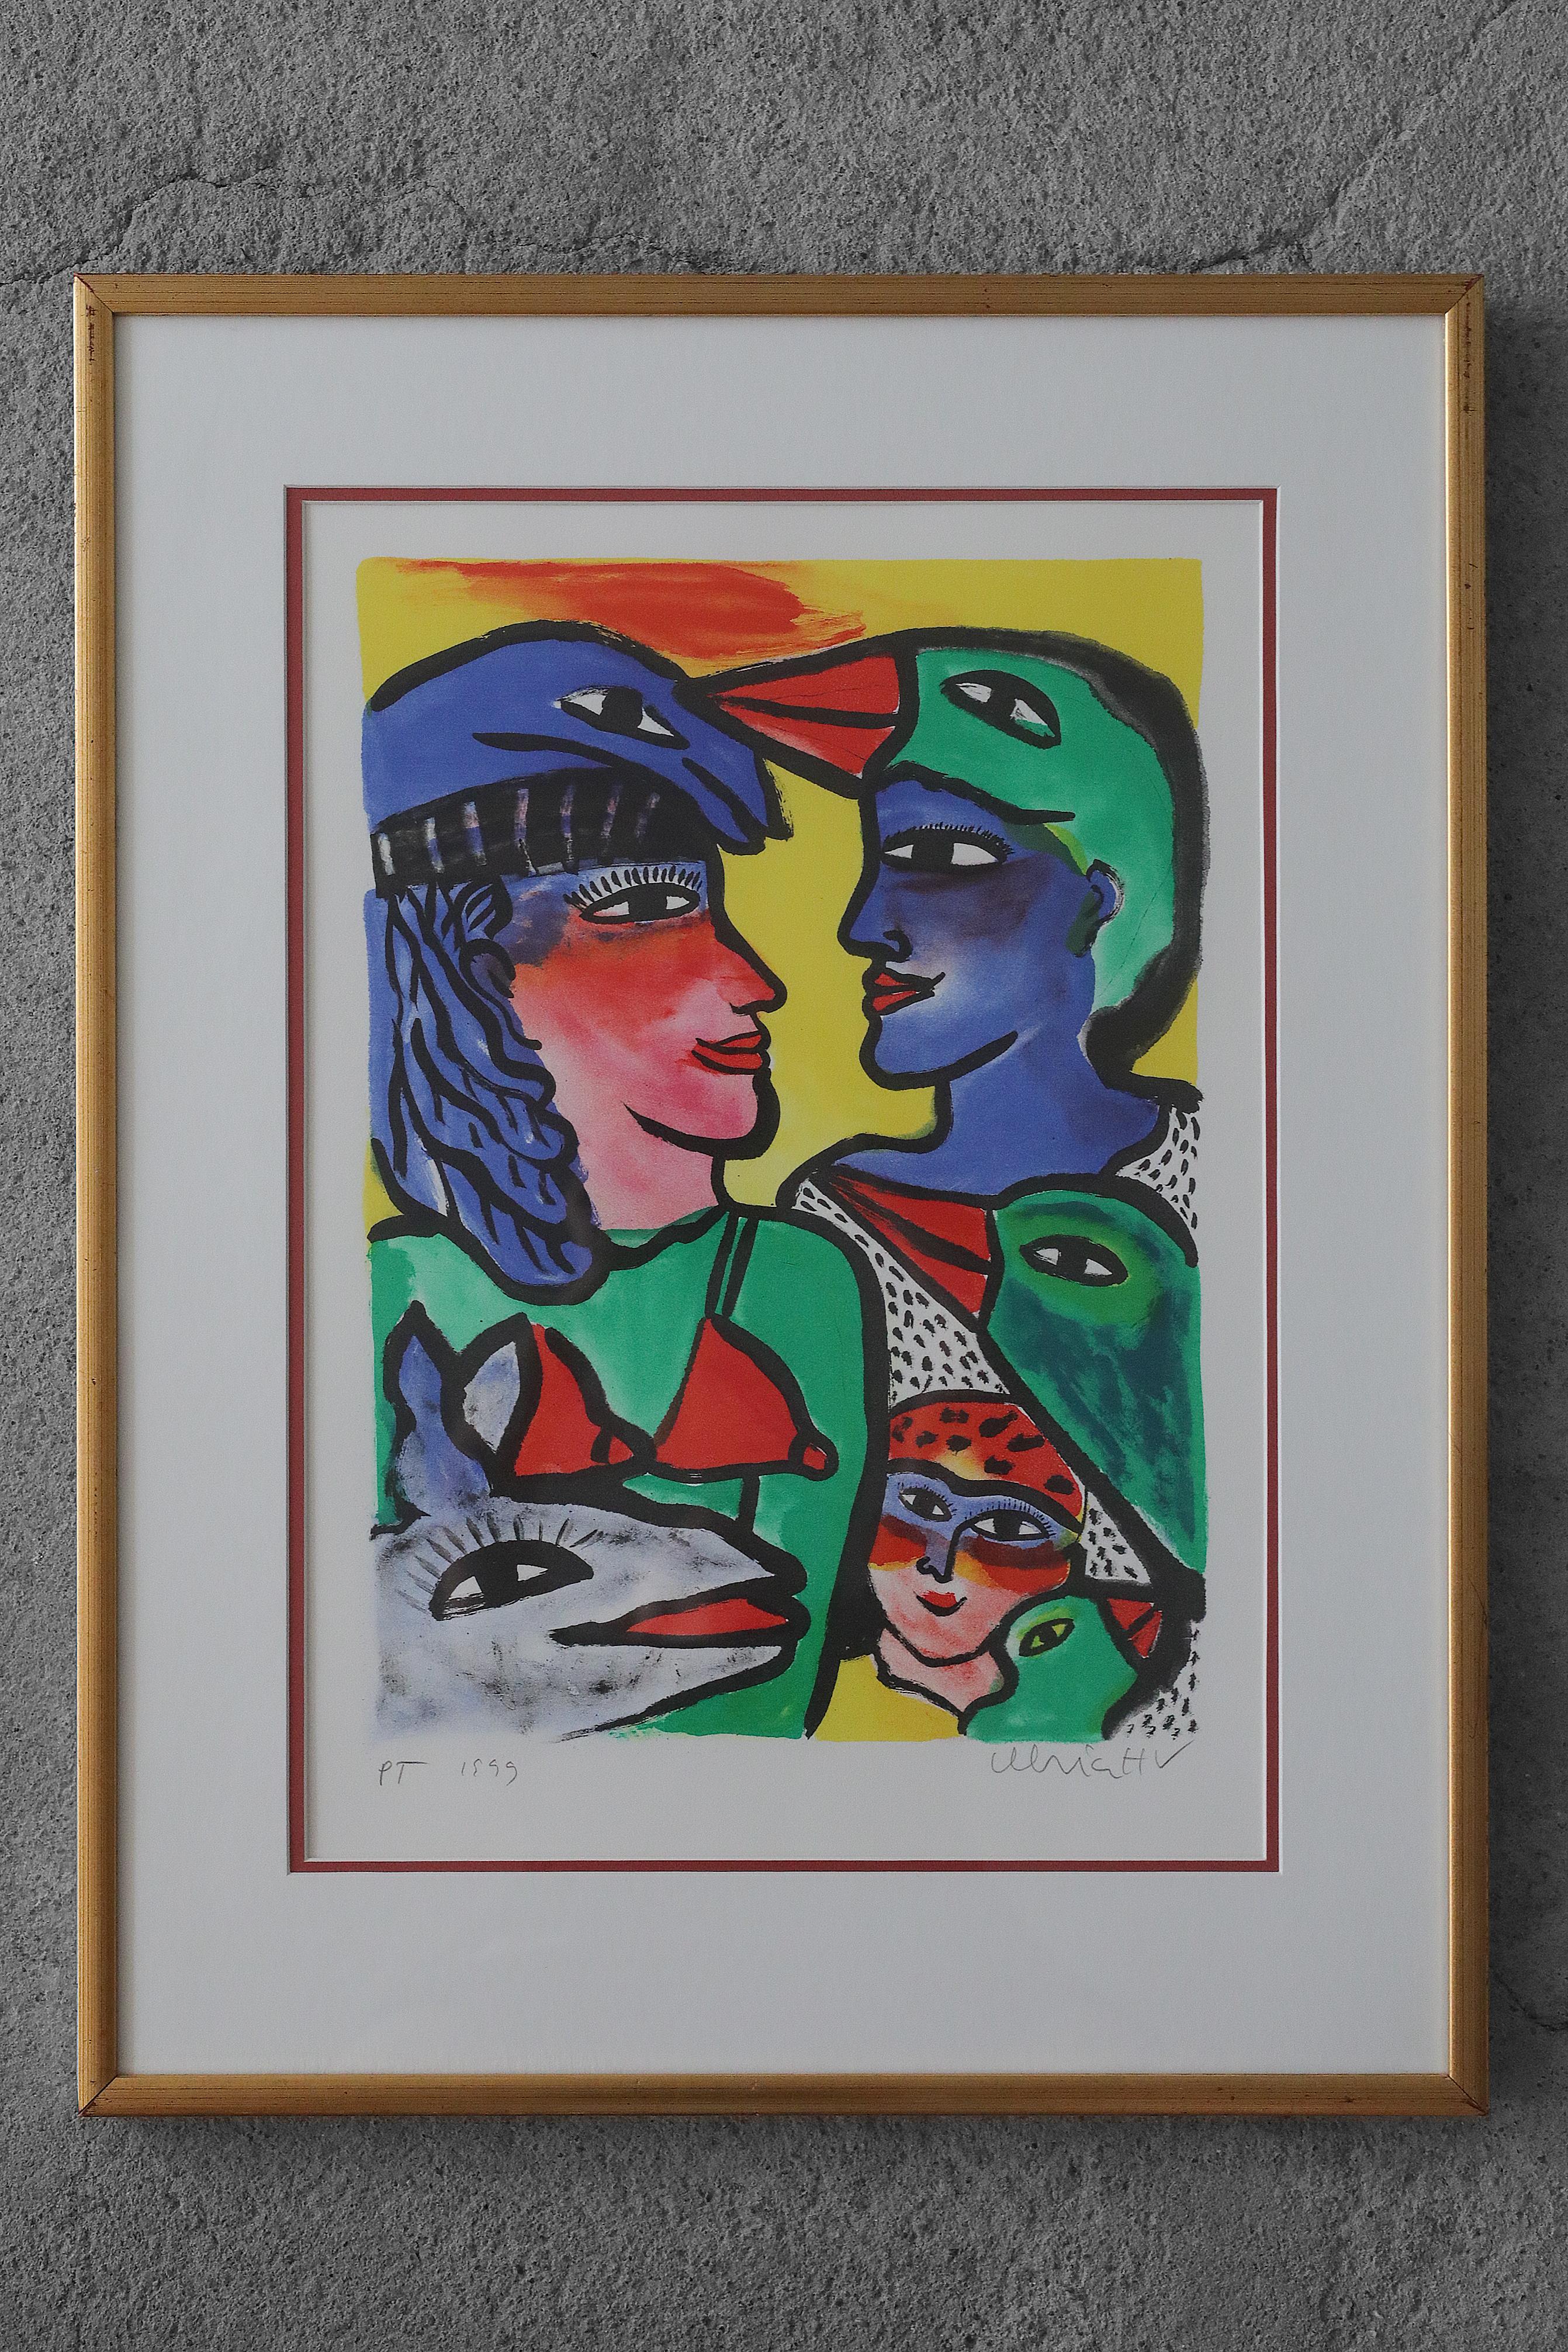 Ulrika Hydman Vallien, Composition de figures, 1999
Lithographie couleur
Œuvre signée par l'artiste, datée et signée P.T (crayon)
Dimensions de la feuille 65/50
Œuvre encadrée

Ulrika Hydman Vallien (1938 à 2018) était une artiste suédoise